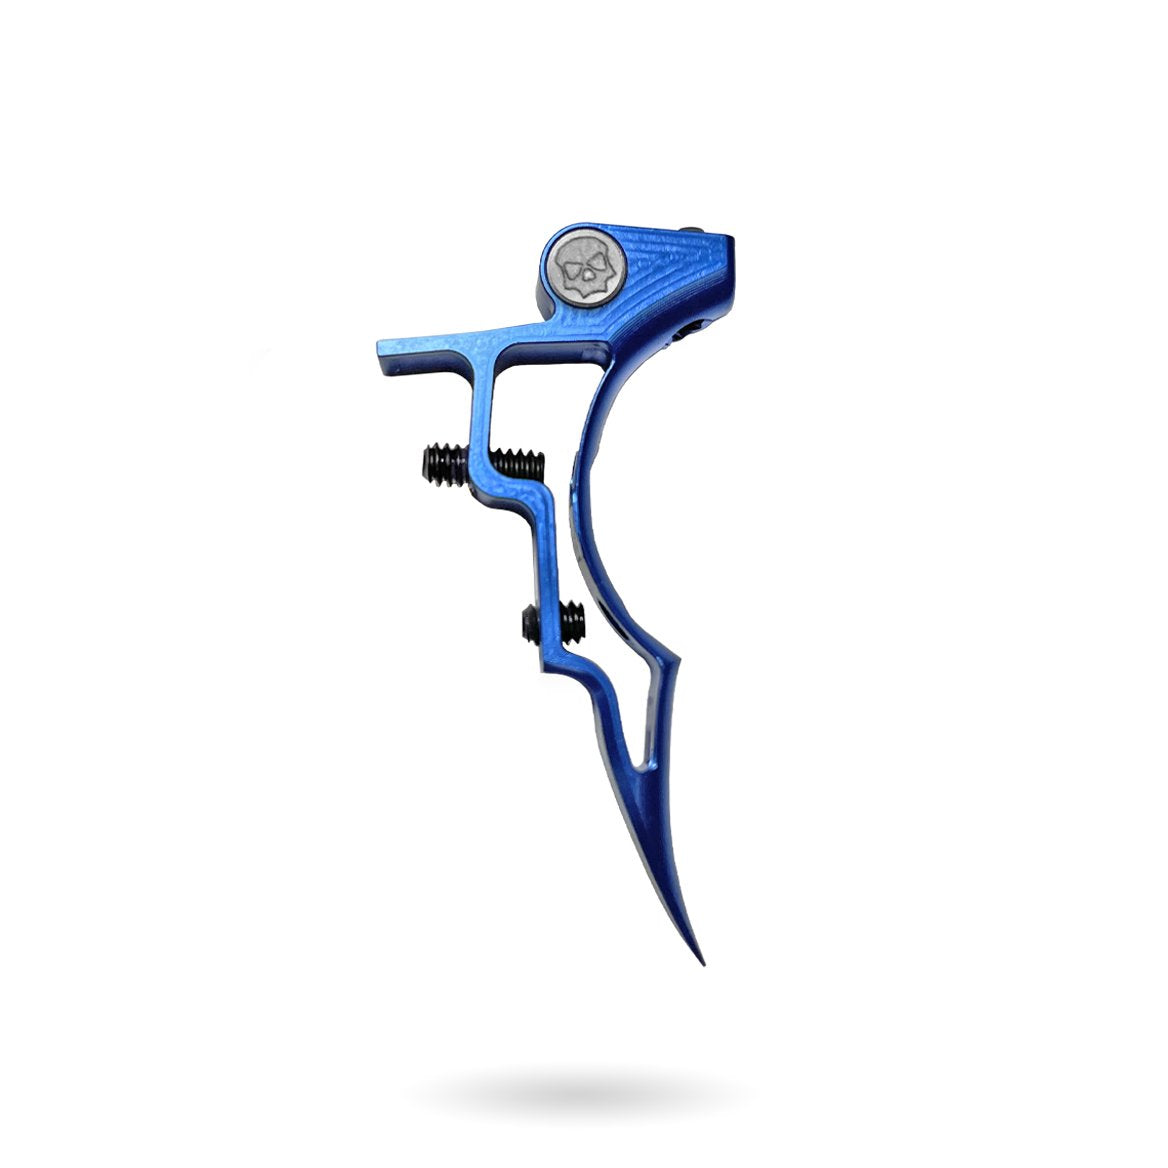 Infamous Etha 2 Adjustable Deuce Trigger - Blue